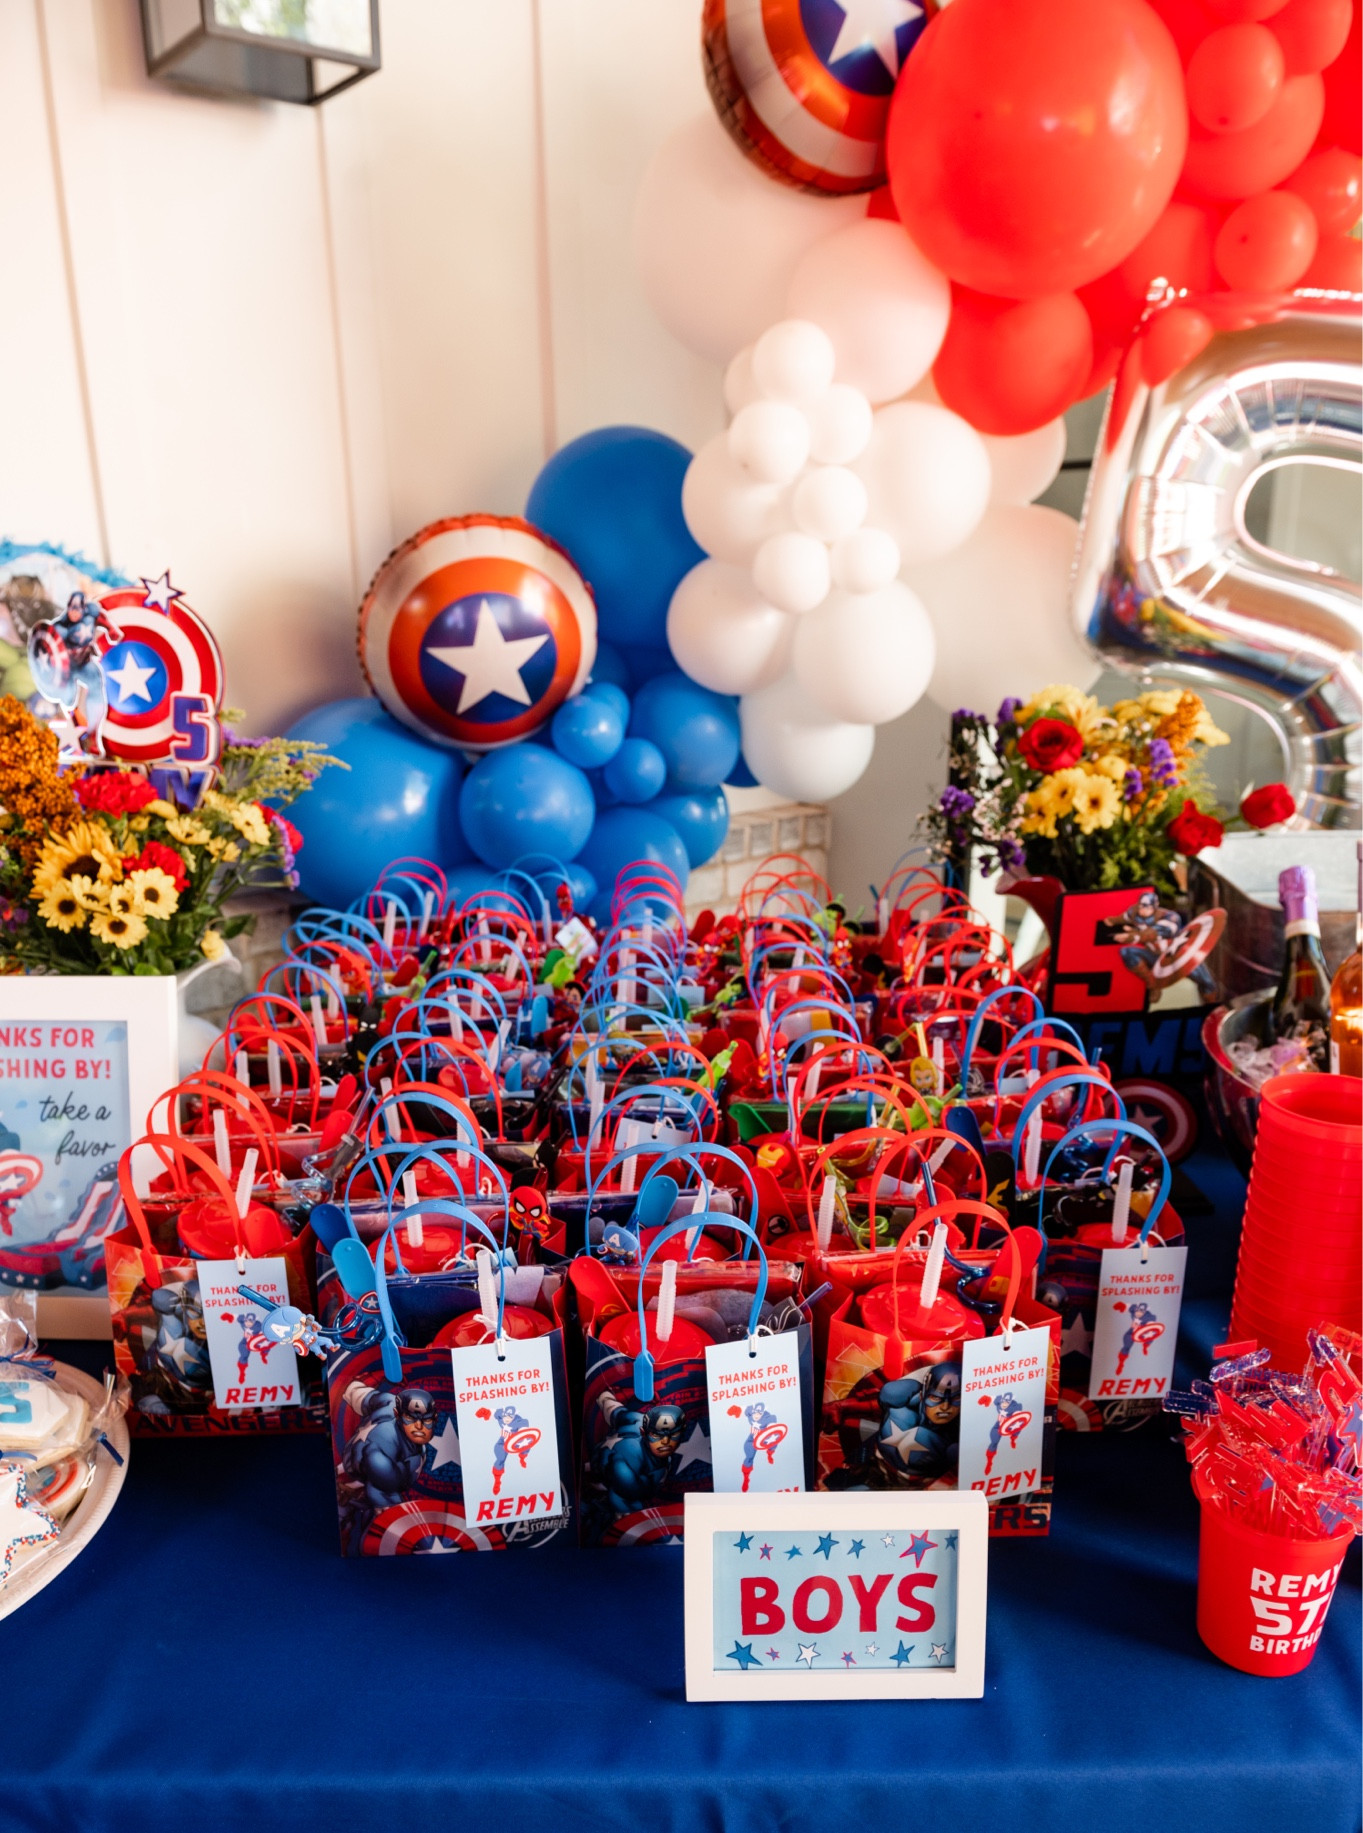 Ensemble Captain America pour enfant - Partywinkel